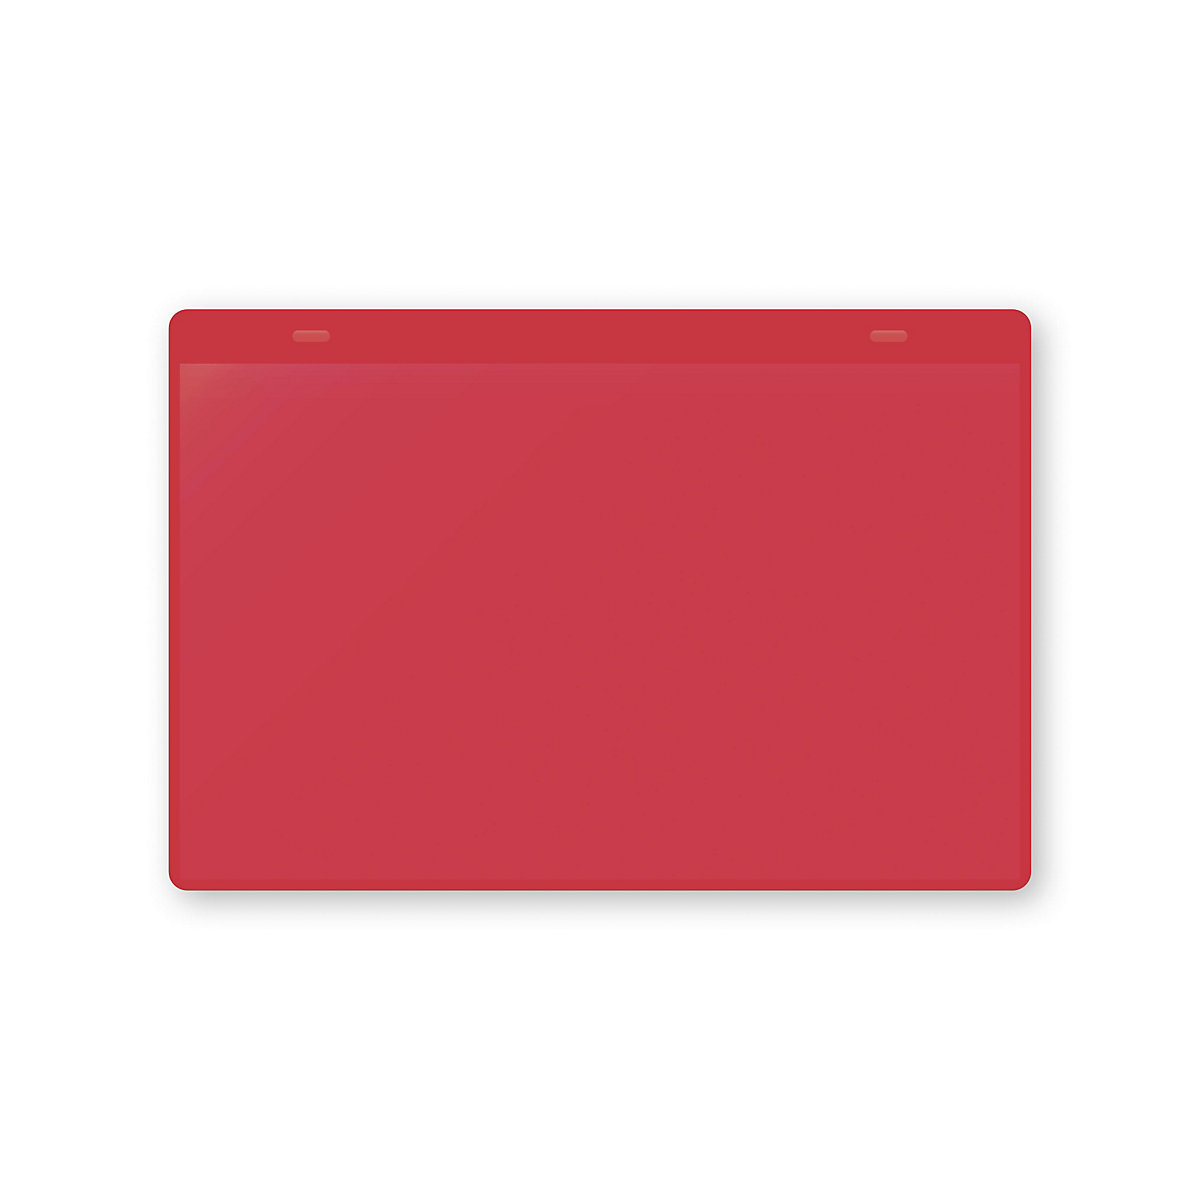 Öntapadó dokumentumtartó tasakok, DIN A5, fekvő, cs. e. 10 db, piros